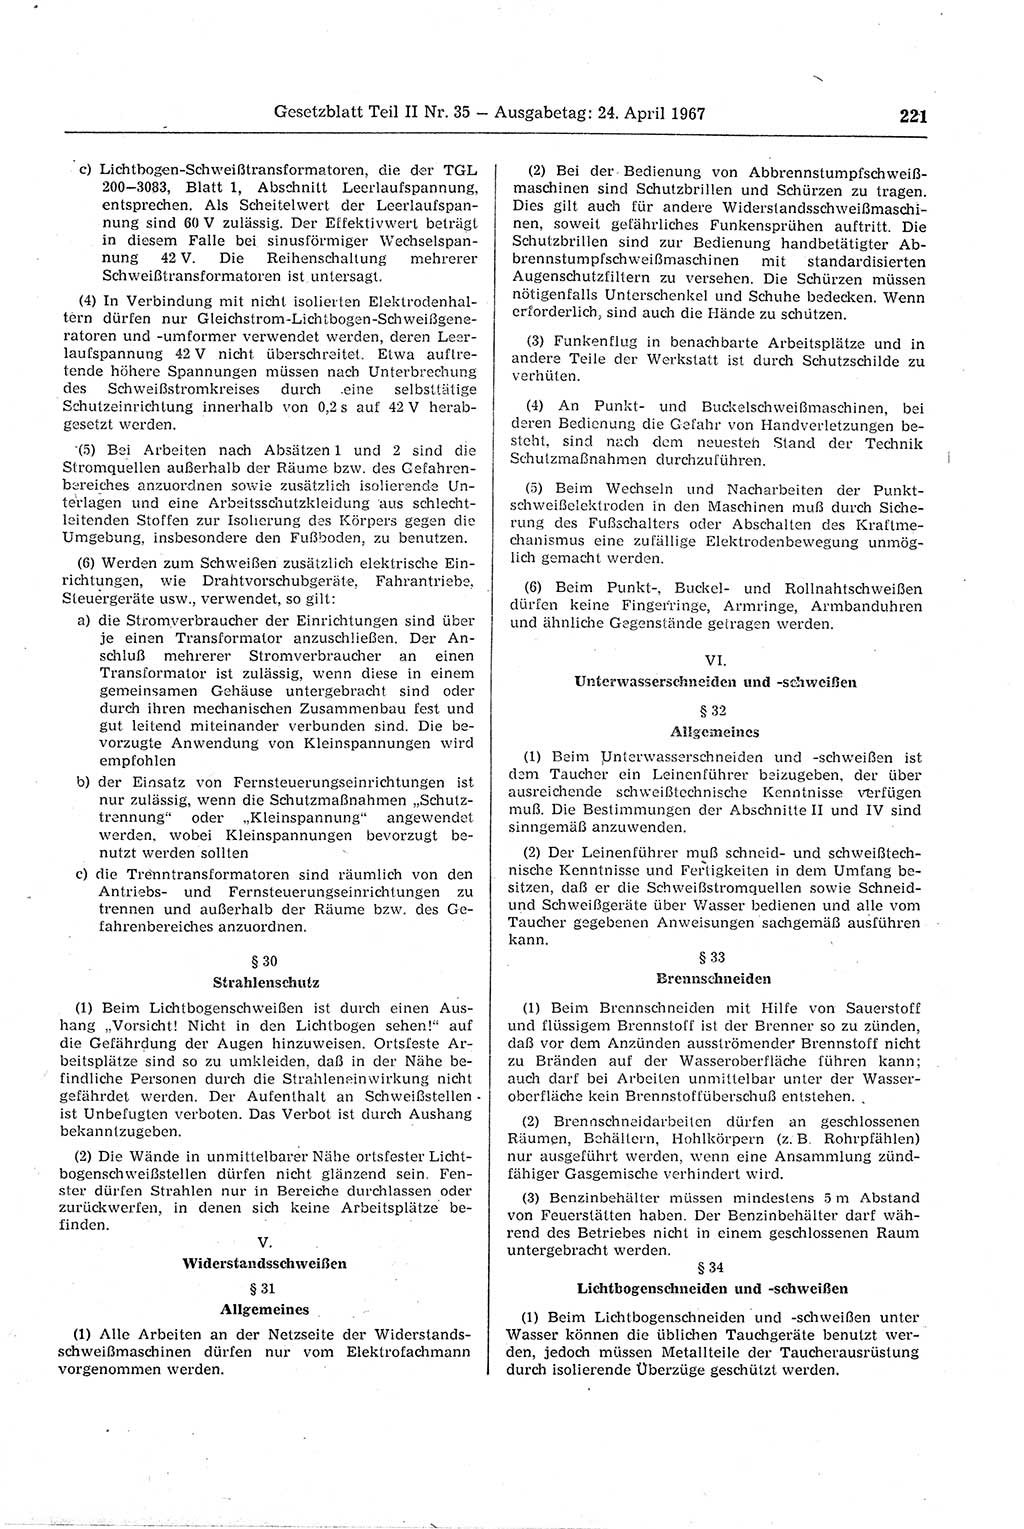 Gesetzblatt (GBl.) der Deutschen Demokratischen Republik (DDR) Teil ⅠⅠ 1967, Seite 221 (GBl. DDR ⅠⅠ 1967, S. 221)